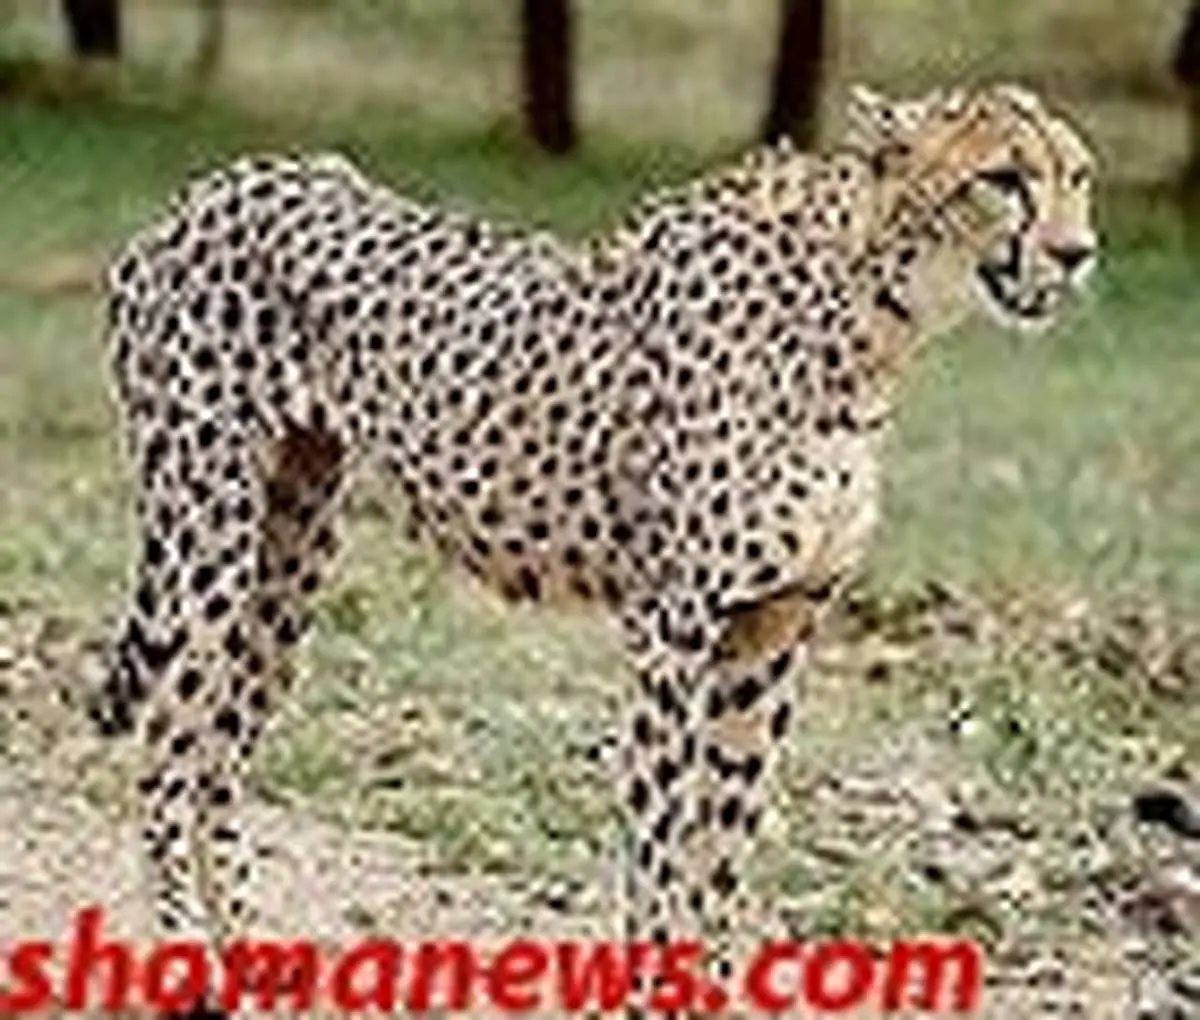 یوزپلنگ ایرانی محکوم به نابودی است!